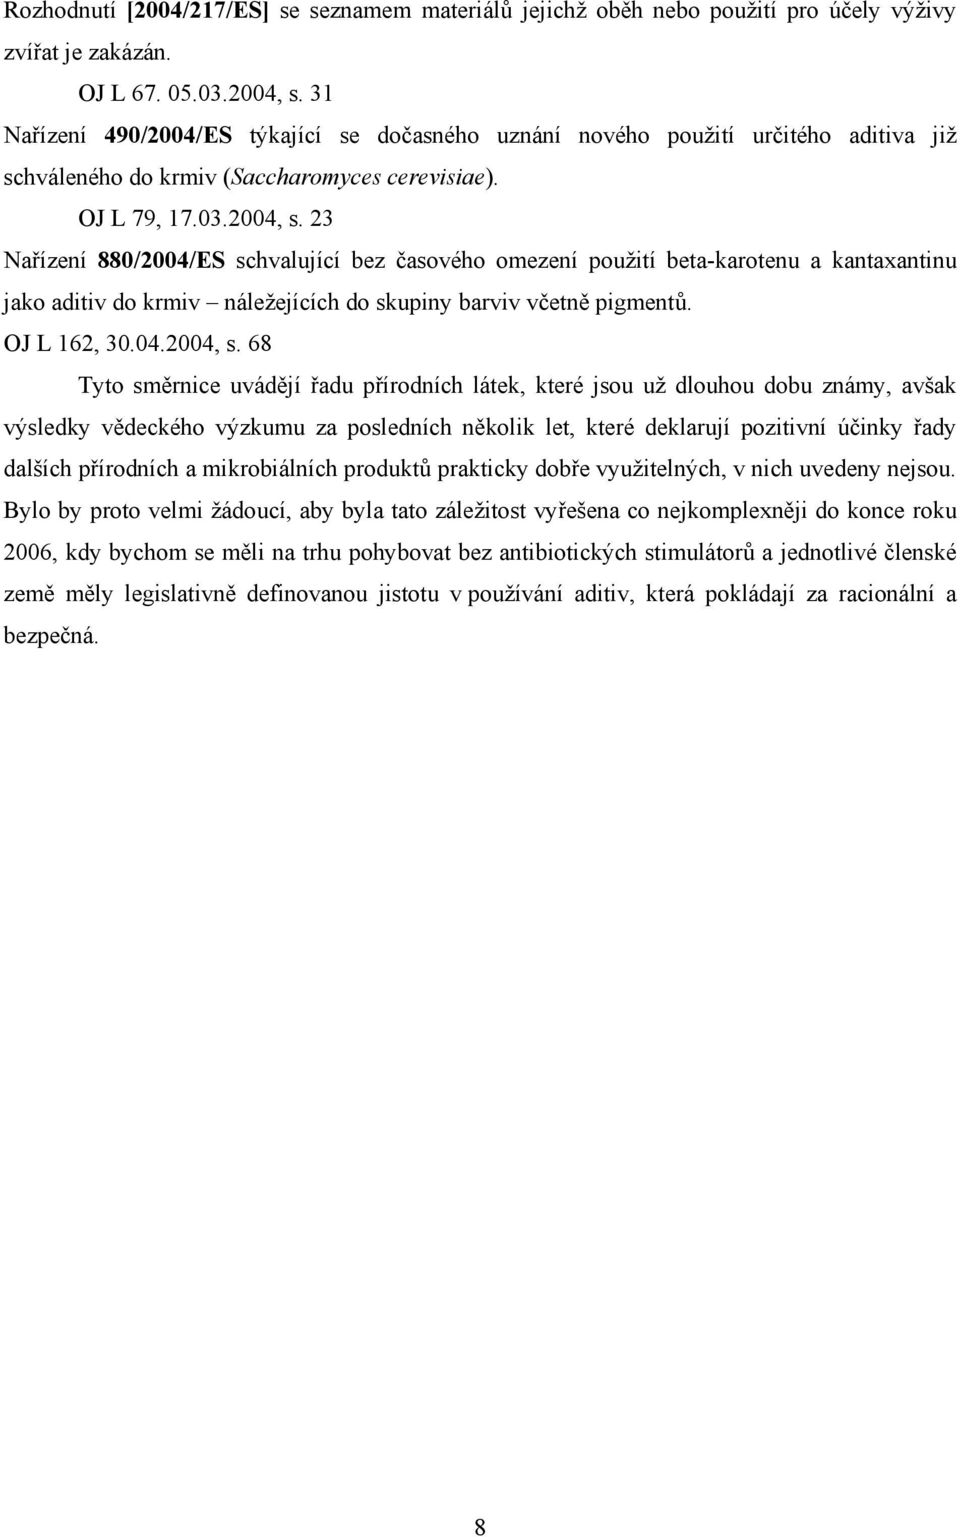 23 Nařízení 880/2004/ES schvalující bez časového omezení použití beta-karotenu a kantaxantinu jako aditiv do krmiv náležejících do skupiny barviv včetně pigmentů. OJ L 162, 30.04.2004, s.